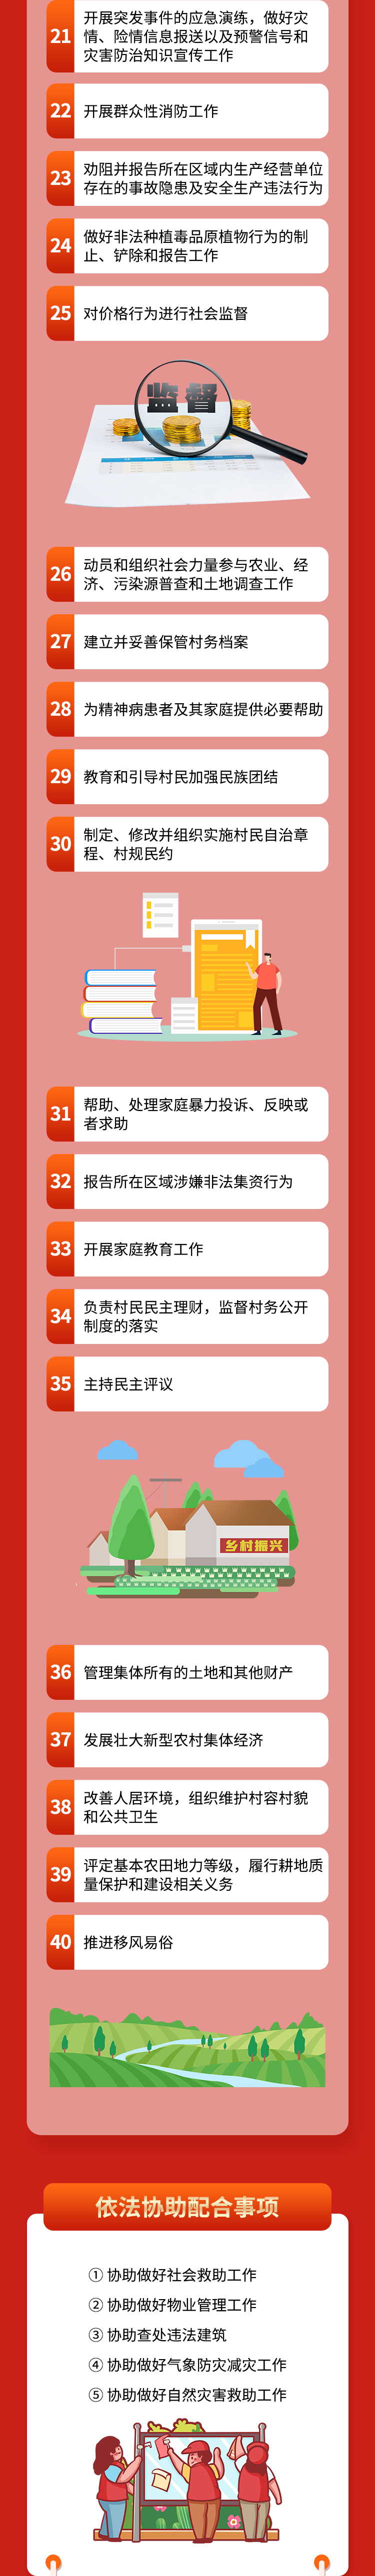 重庆市行政村工作事项清单改1_02